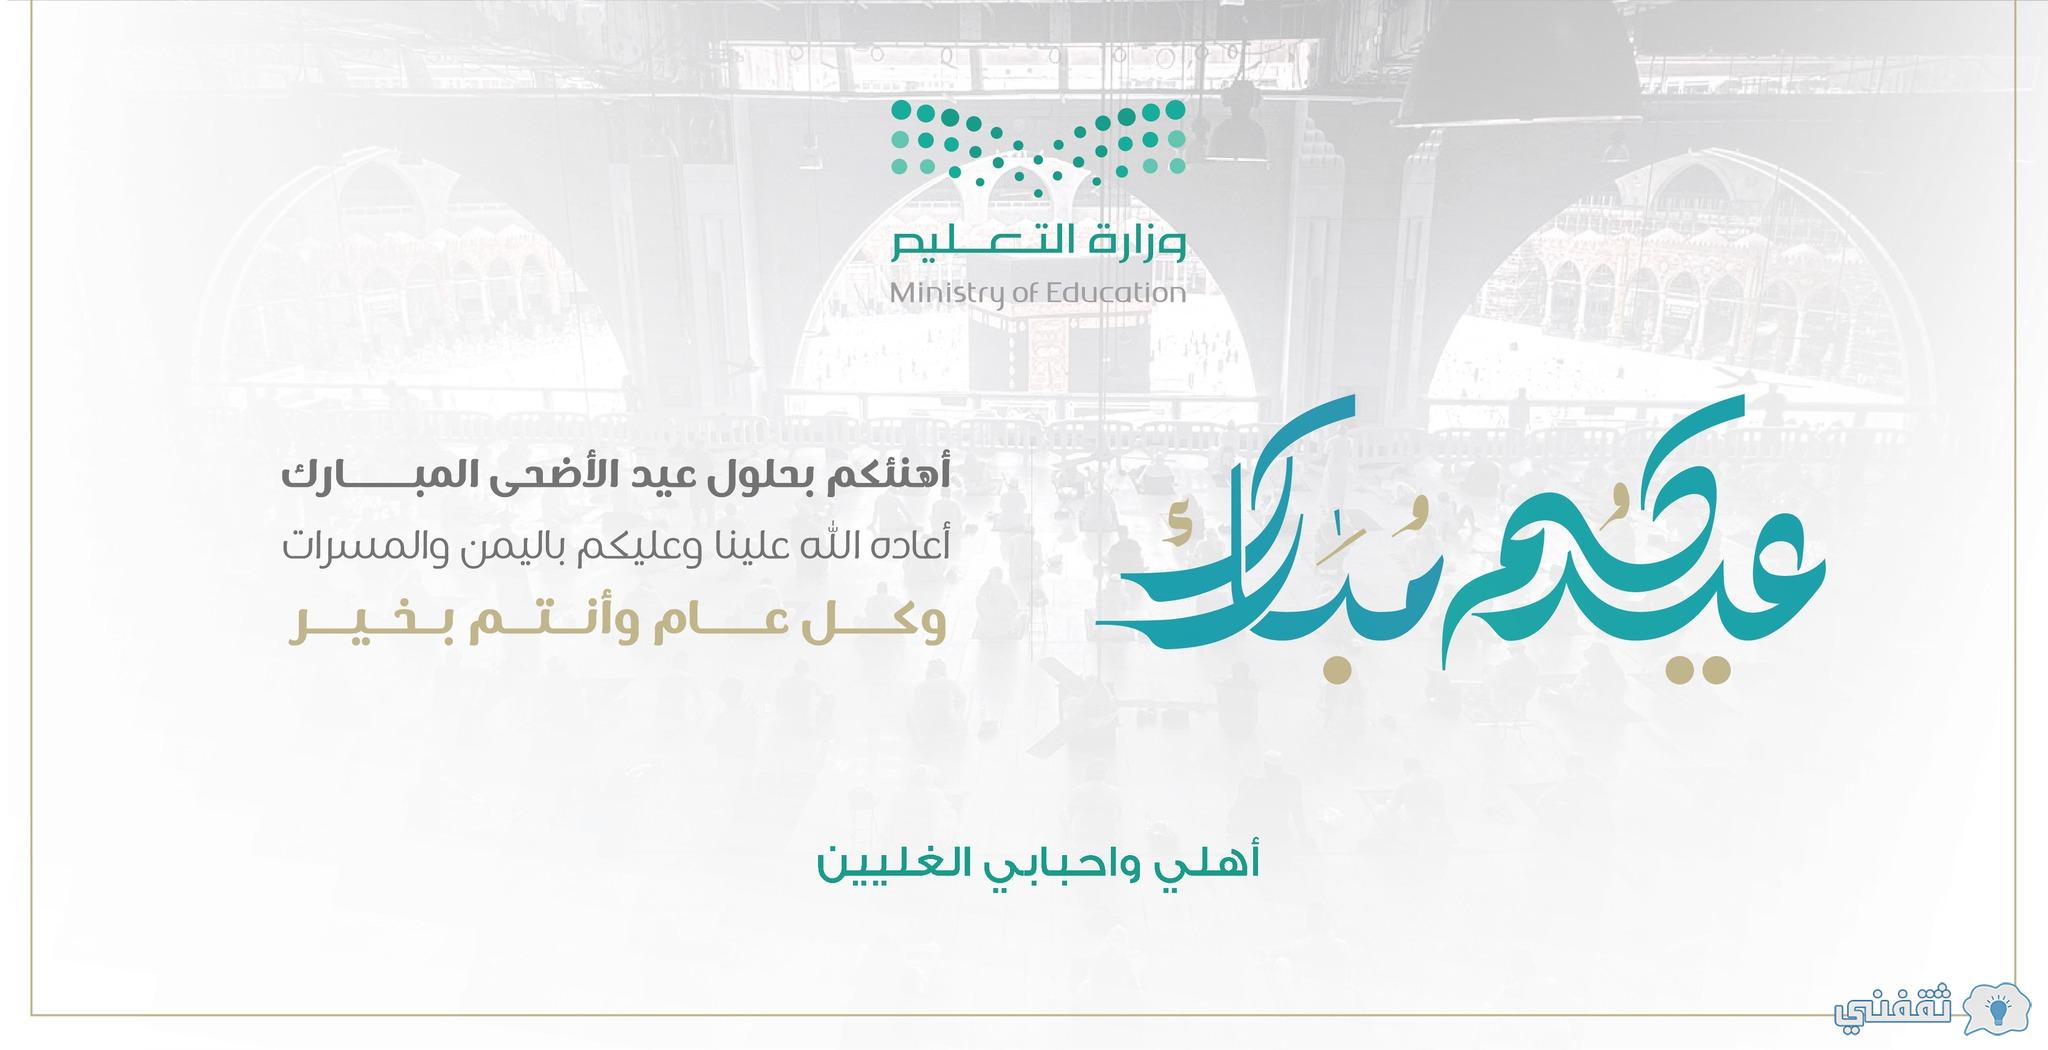 رابط إنشاء بطاقة تهنئة بالعيد moe.gov.sa اكتب اسمك على بطاقة عيد الأضحى 1443 وزارة التعليم